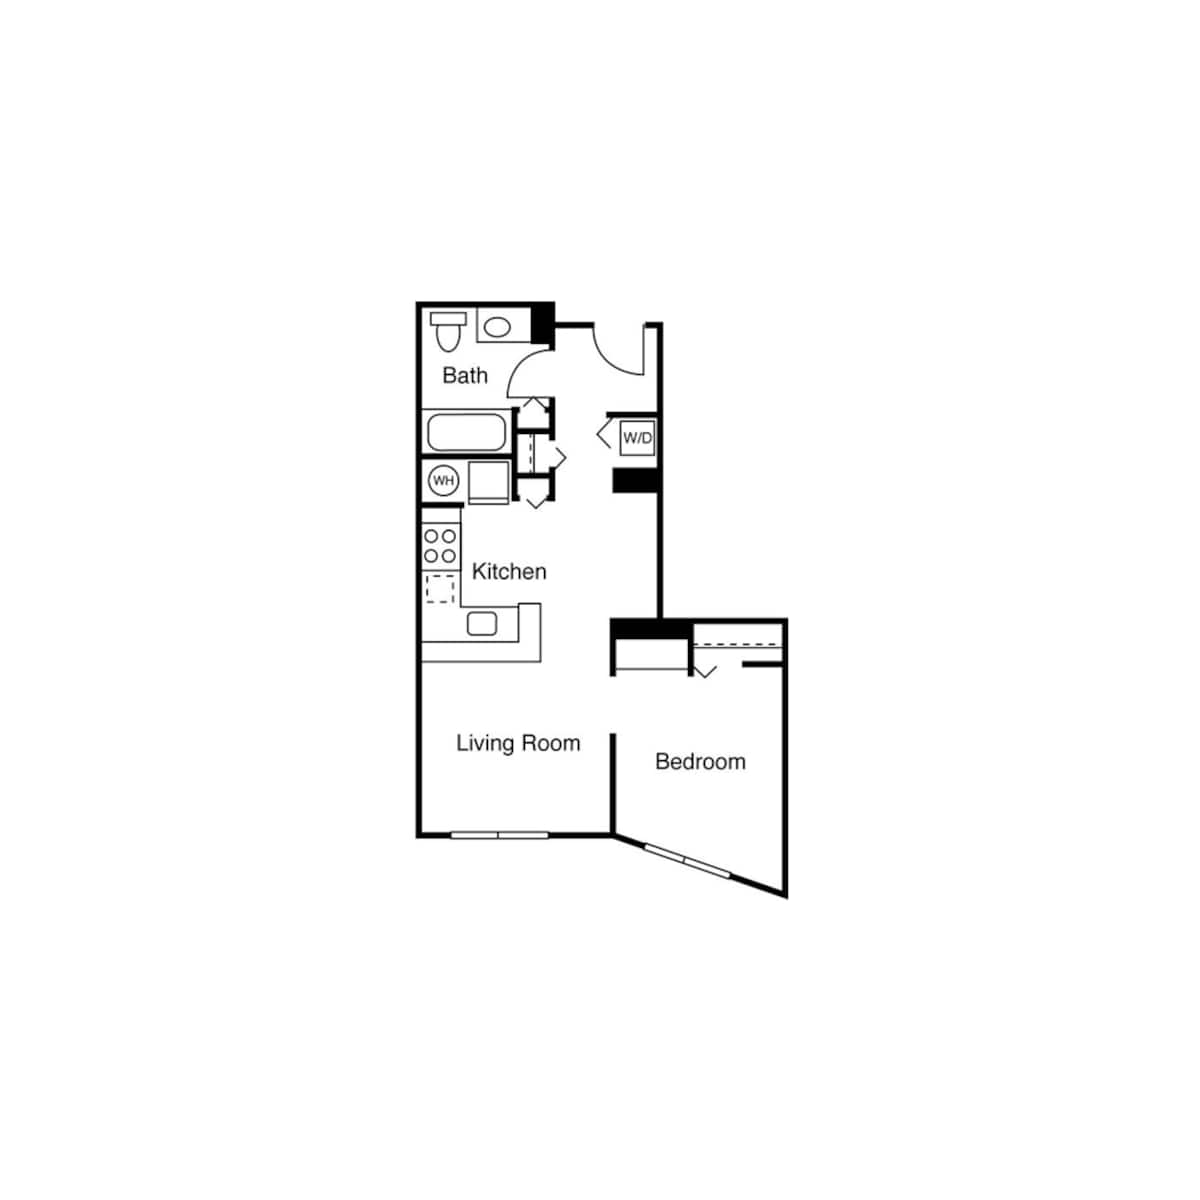 Floorplan diagram for Studio D, showing 1 bedroom